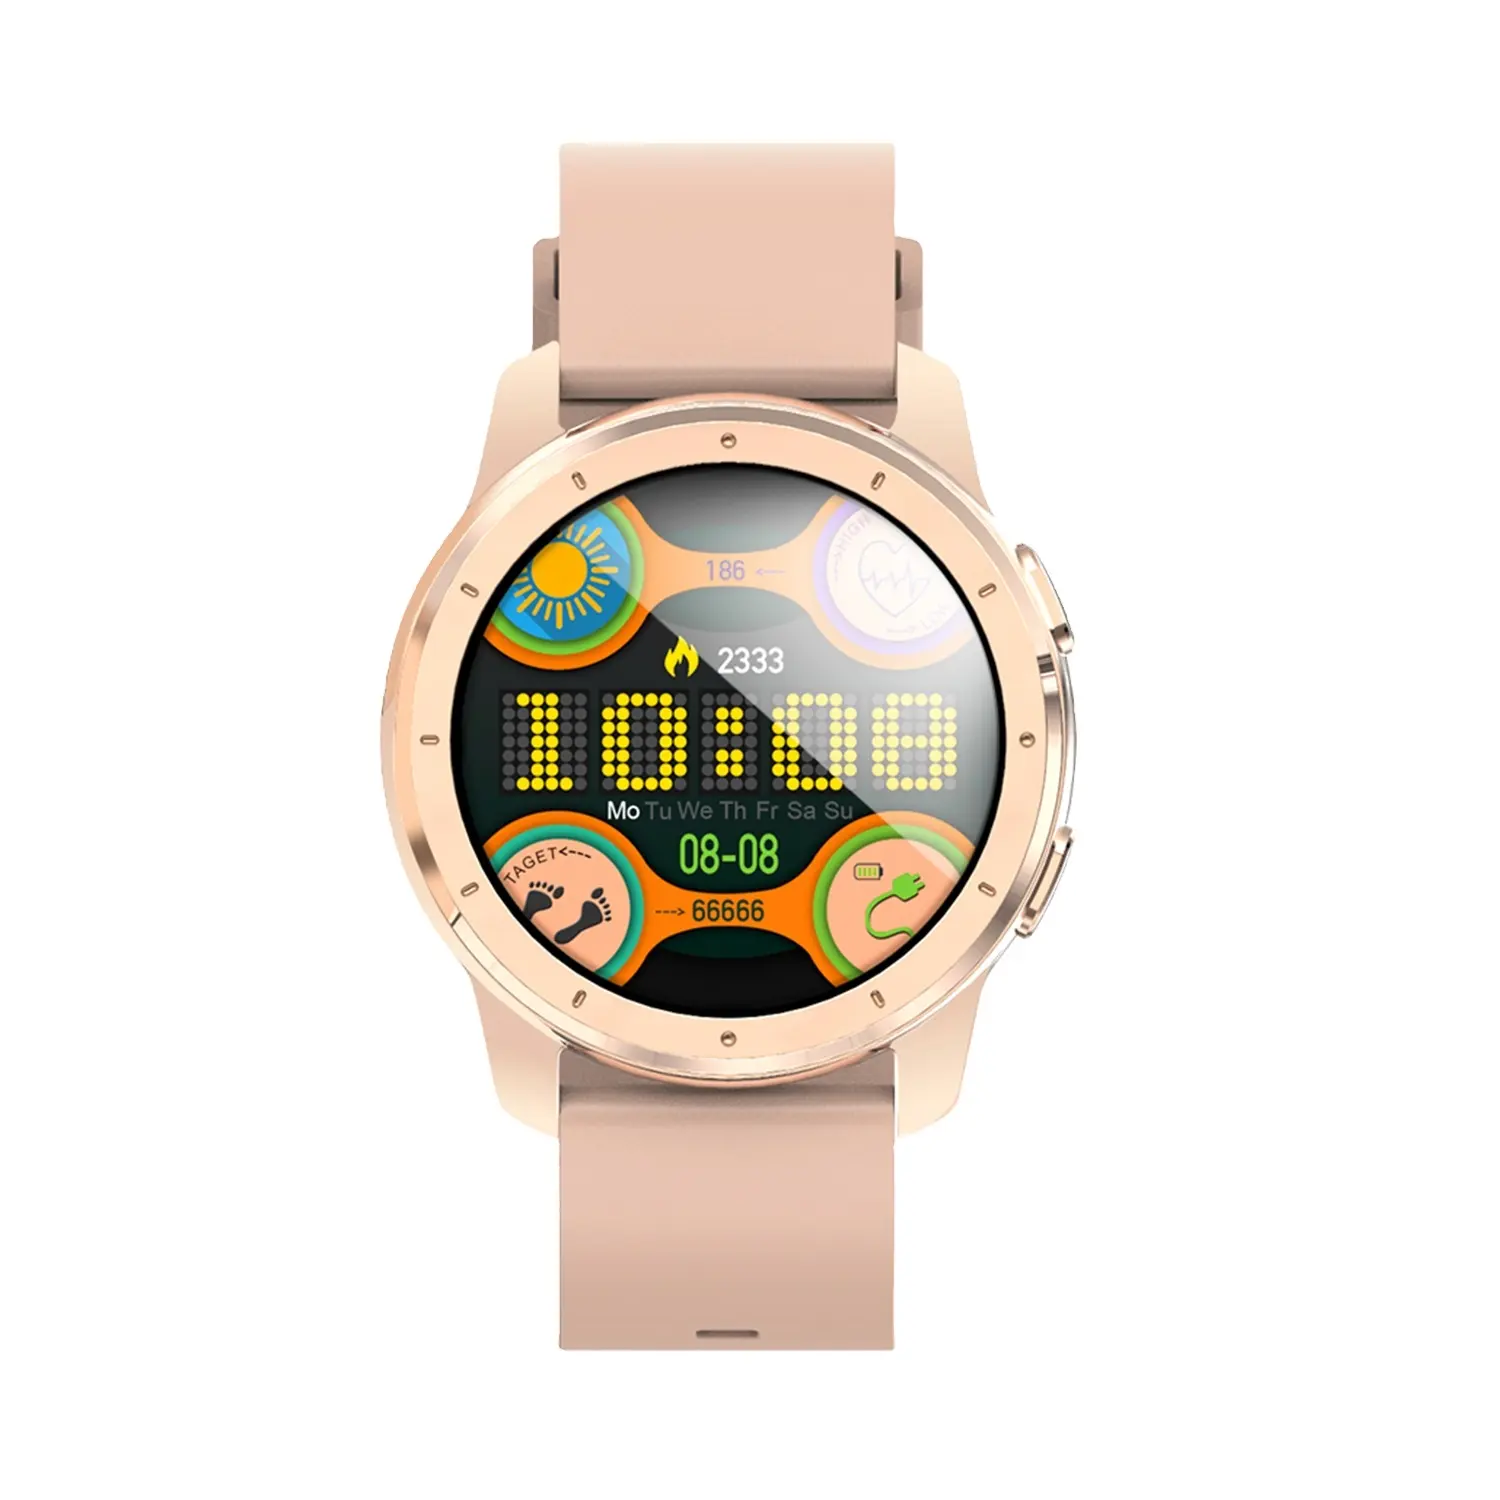 New arrival Amazon Hot Sale Smart Watch MX1 IP68 Waterproof Reloj Health Watch Smart Bracelet Smartwatch